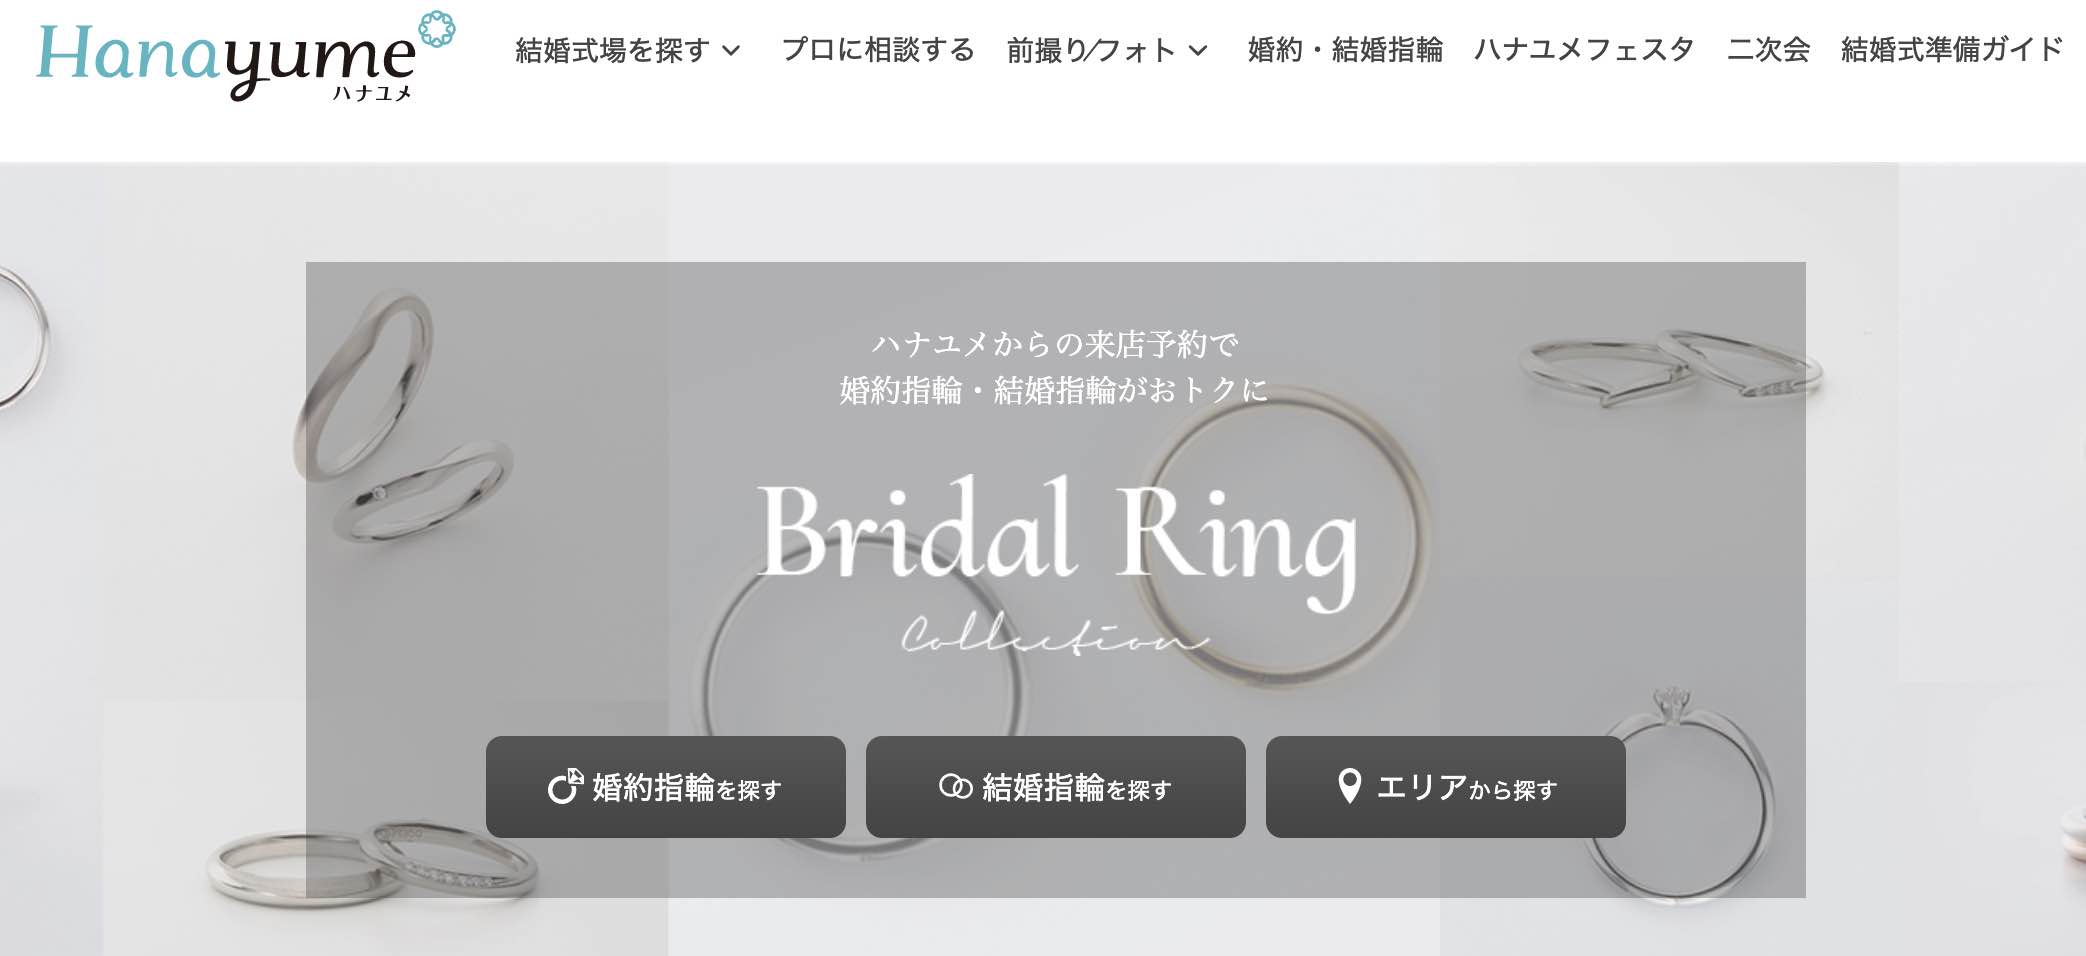 21年7月 婚約指輪 結婚指輪の各社キャンペーン特典まとめ 来店予約 購入でいくらもらえる まるまるまりっじ